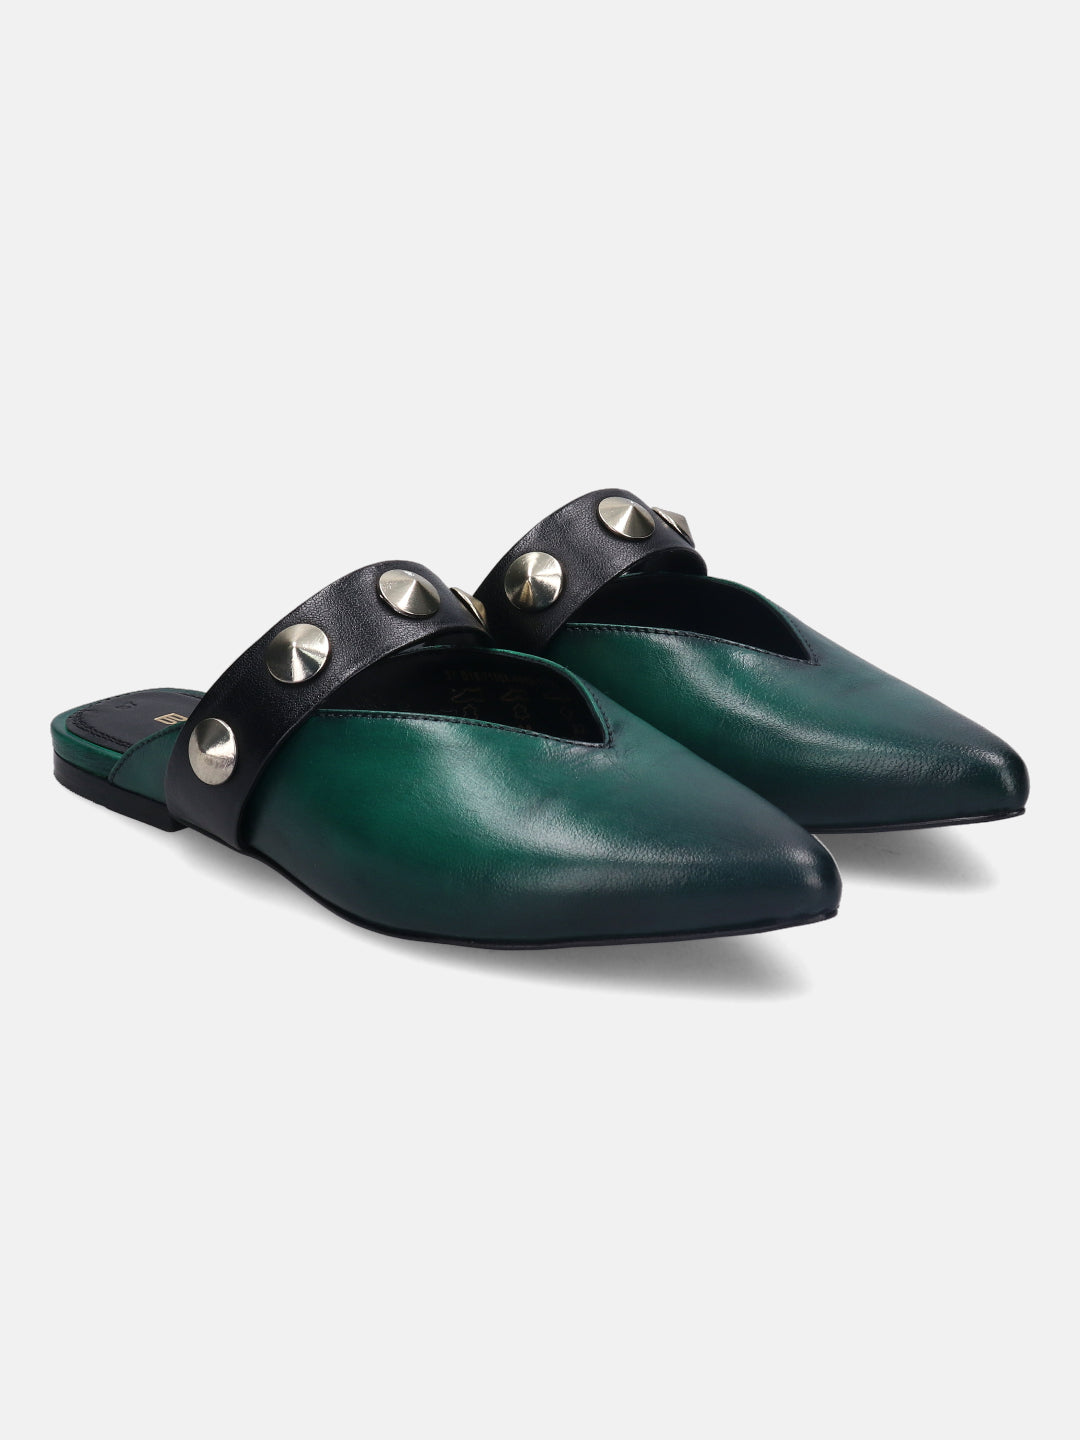 Tabea Dark Green & Black Flat Sandals - BAGATT